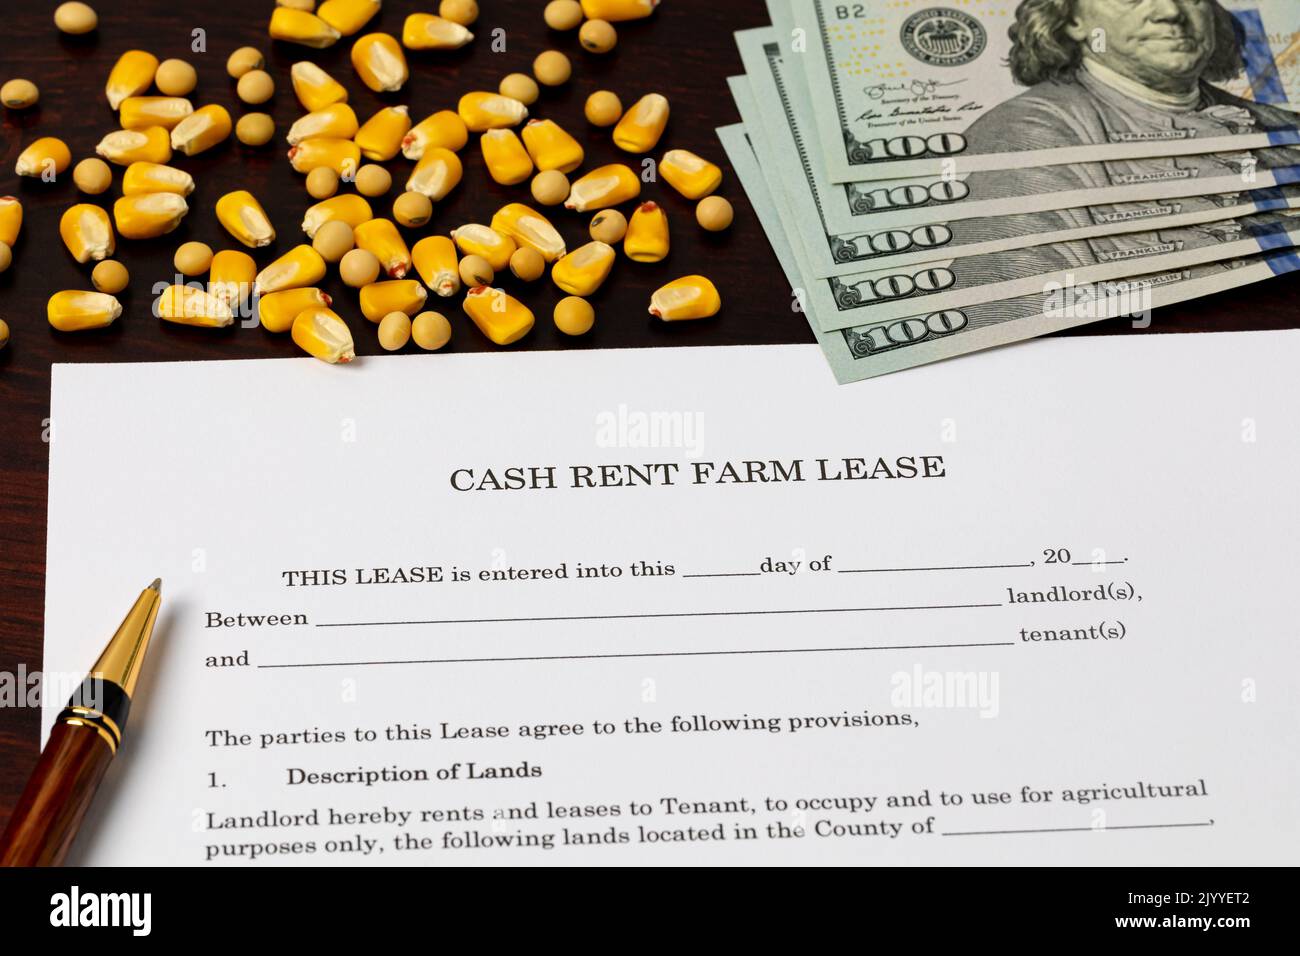 Contratto di affitto in contanti per l'azienda agricola con semi di mais e soia. Concetto di agricoltura, agricoltura e affittuario. Foto Stock